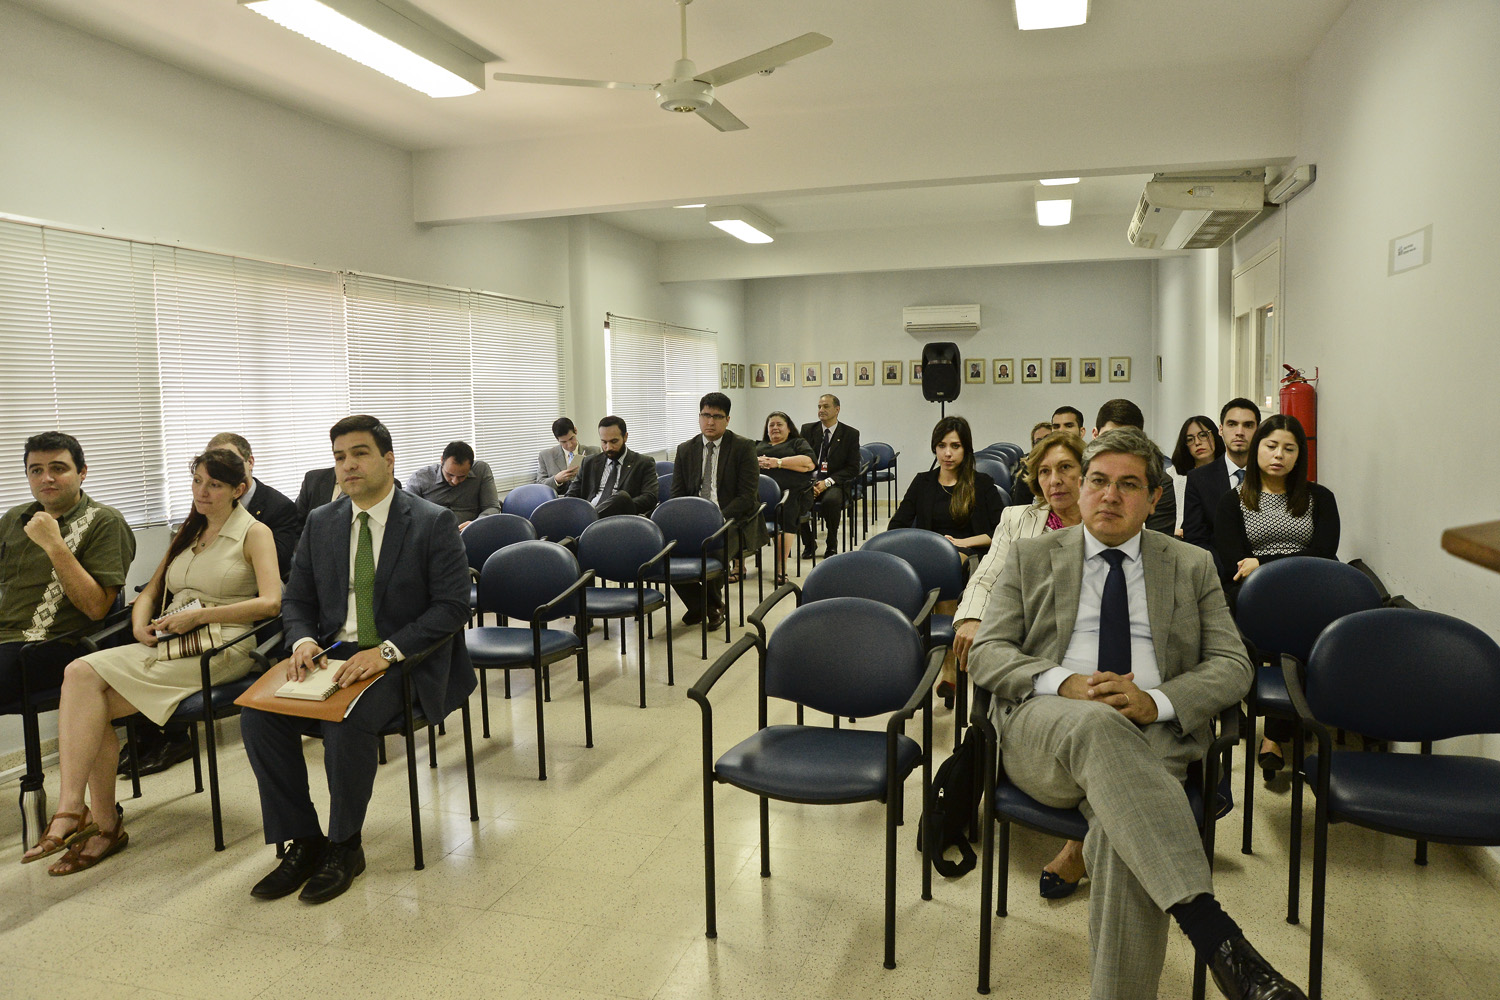 Conferencia sobre “Análisis de los procesos de ciudadanía” se realizó en la Academia Diplomática